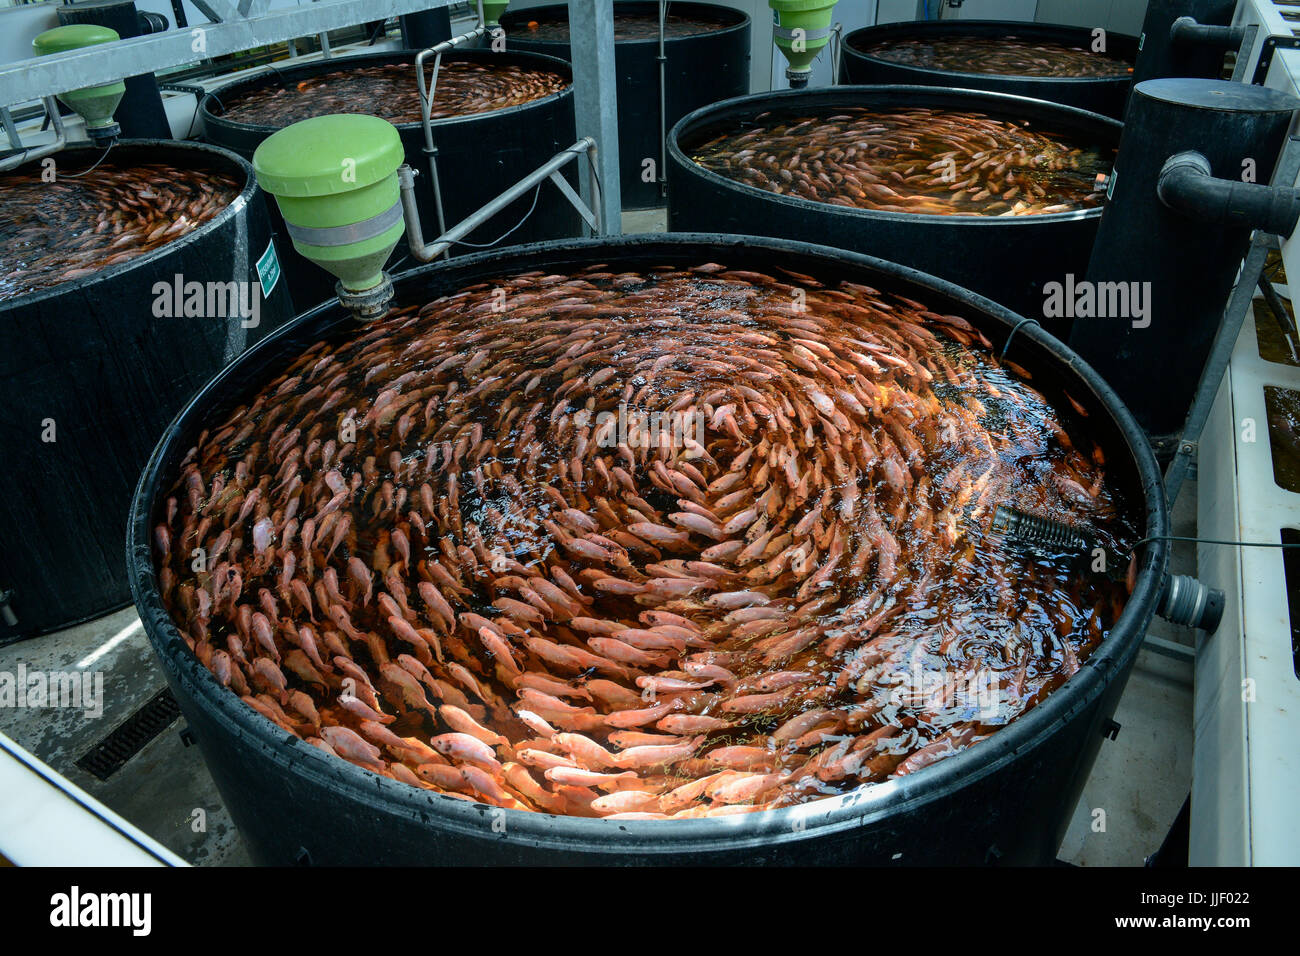 Deutschland, Berlin, Tilapia Fischfarm von Start-up-ECF, die Fischzucht wird kombiniert mit Gewächshäusern kultivieren Gemüse mit Abwasser aus den Fischteichen bewässert, das System nennt man Aquaponic, der Fisch ist in Berlin zu vermeiden lange Transportwege, Grünfutter Feld verteilt Stockfoto